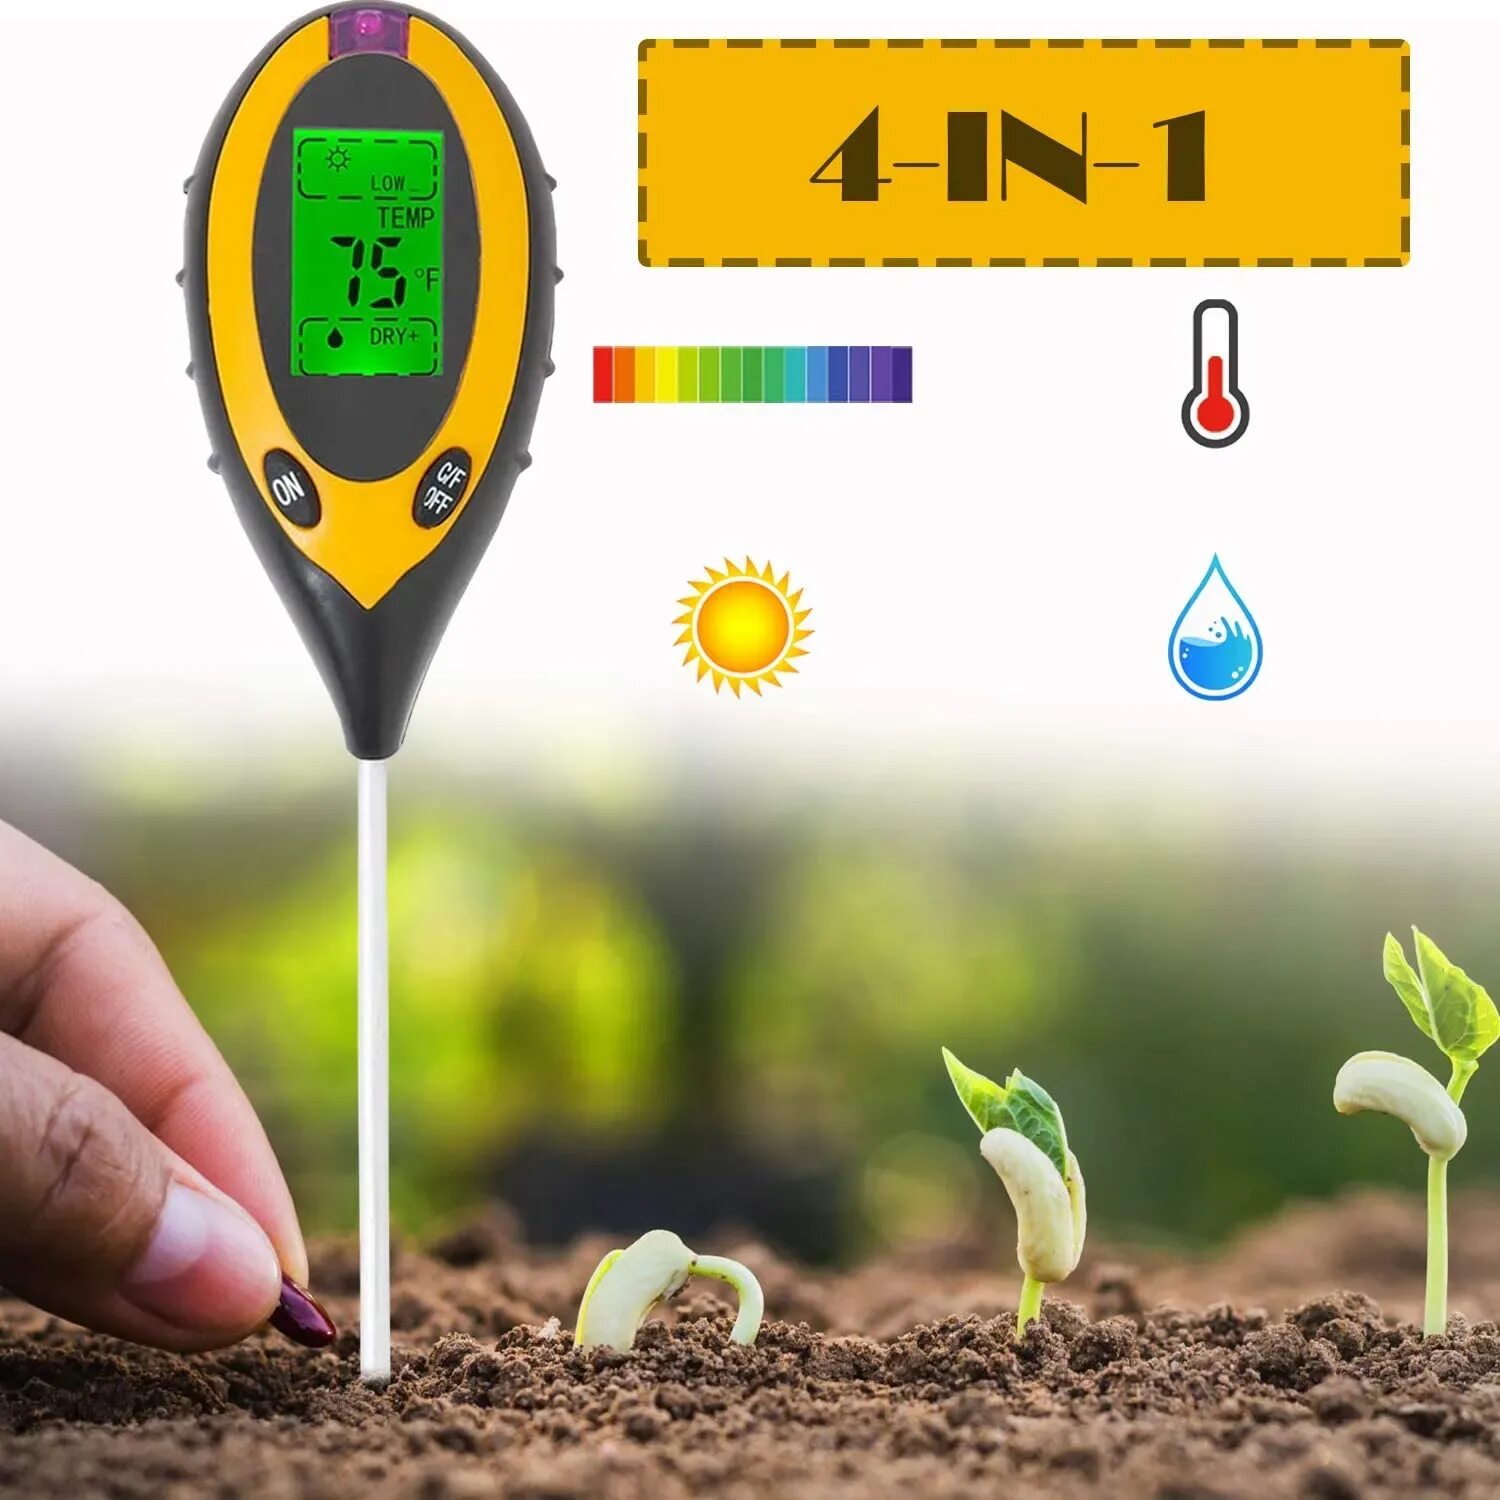 Влажностью кислотностью и. Измеритель кислотности Soil тестер s 1. Электронный измеритель кислотности почвы 3 в 1. Измеритель кислотности РН почвы электронный 3 в 1/100. Измеритель кислотности влажности и освещенности почвы 3 в 1.